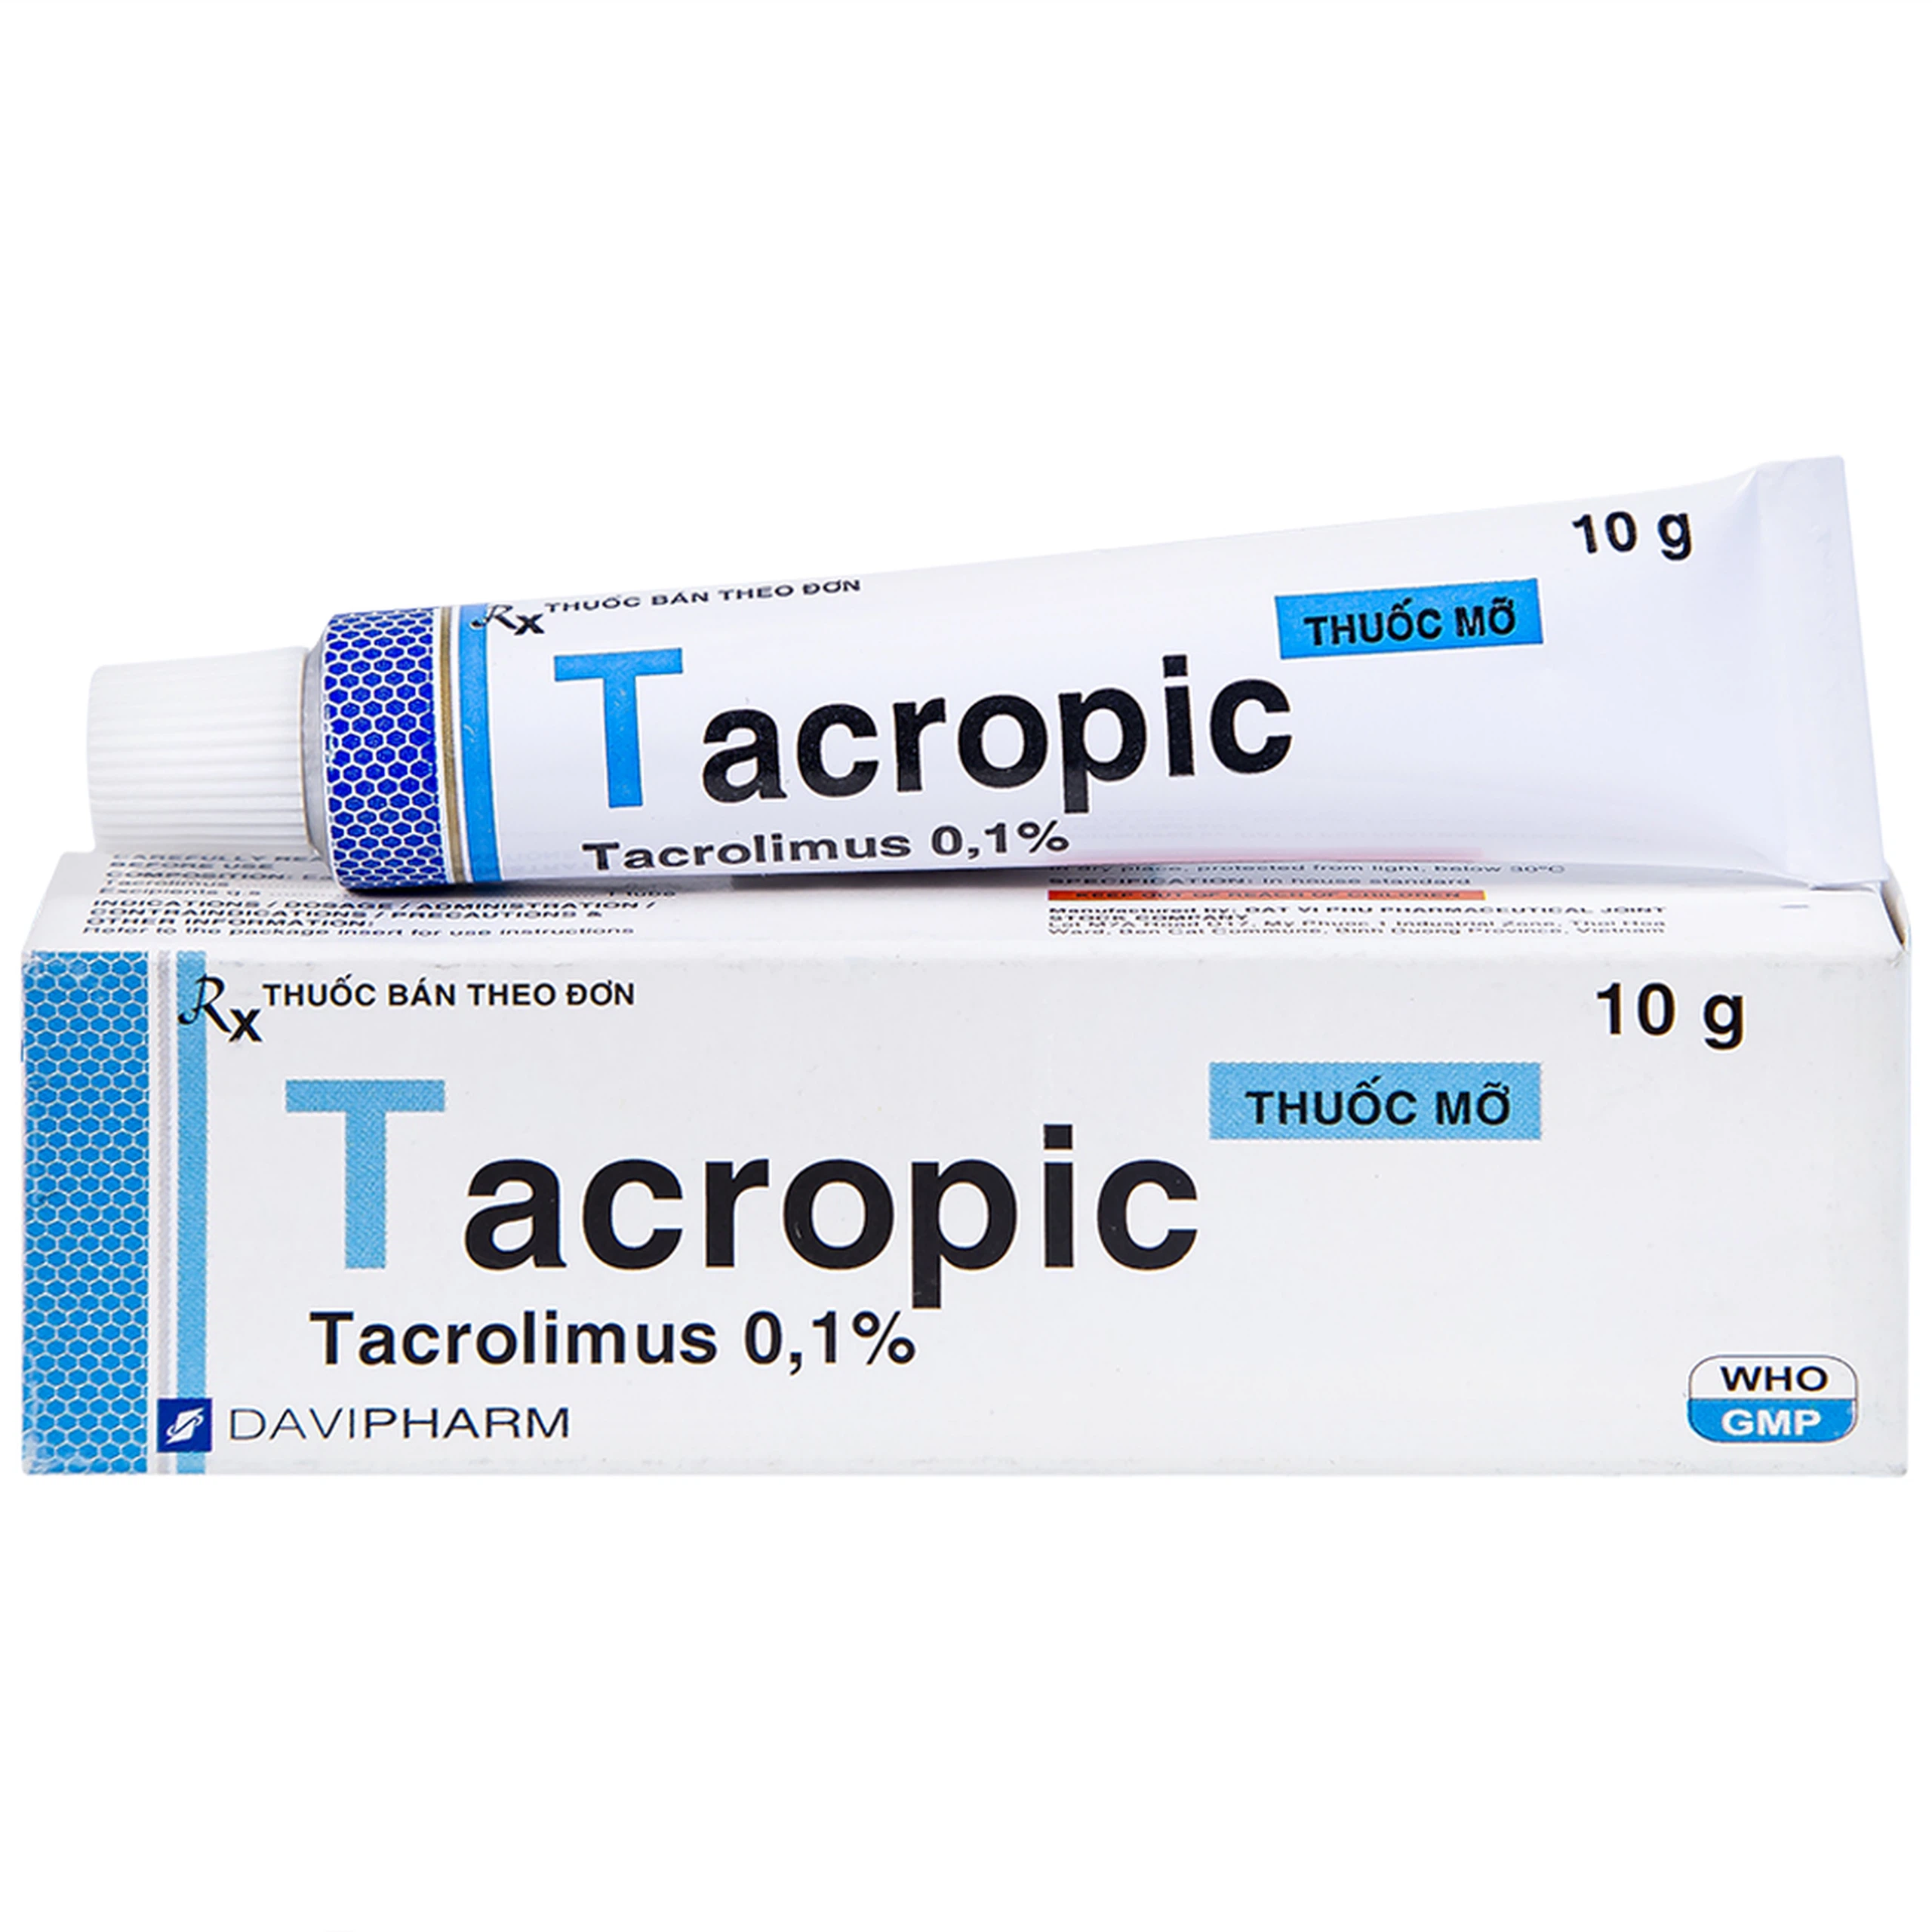 Thuốc mỡ Tacropic Tacrolimus 0,1% Davipharm điều trị chàm thể tạng (10g)